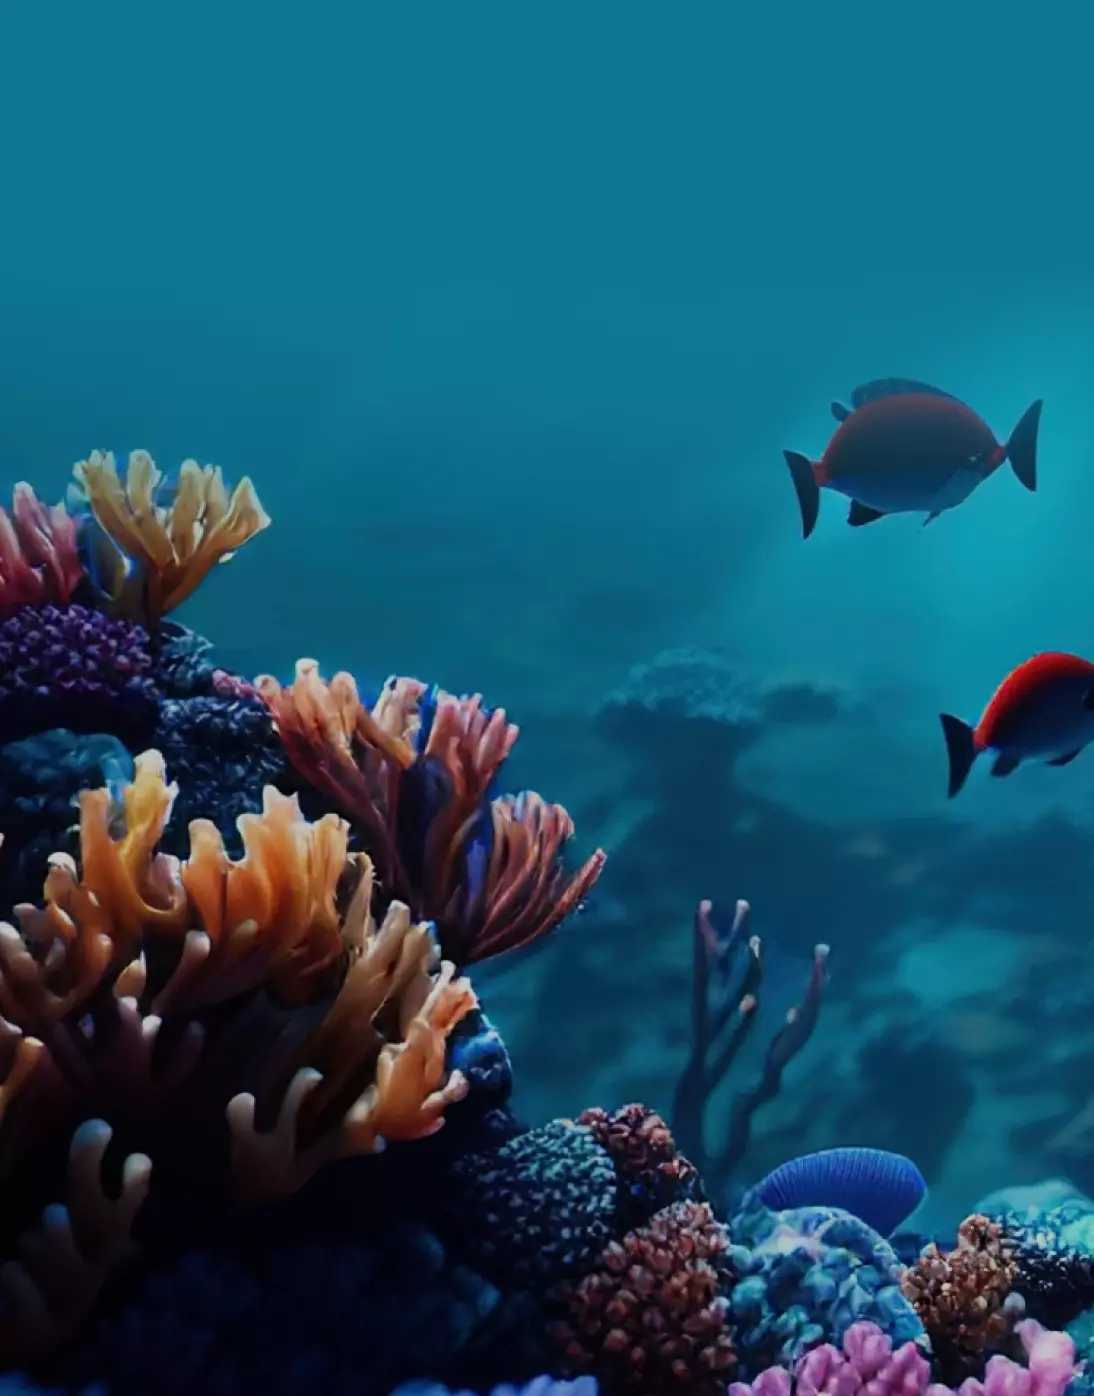 Imagem gerada por computador do fundo do mar com peixes nadando